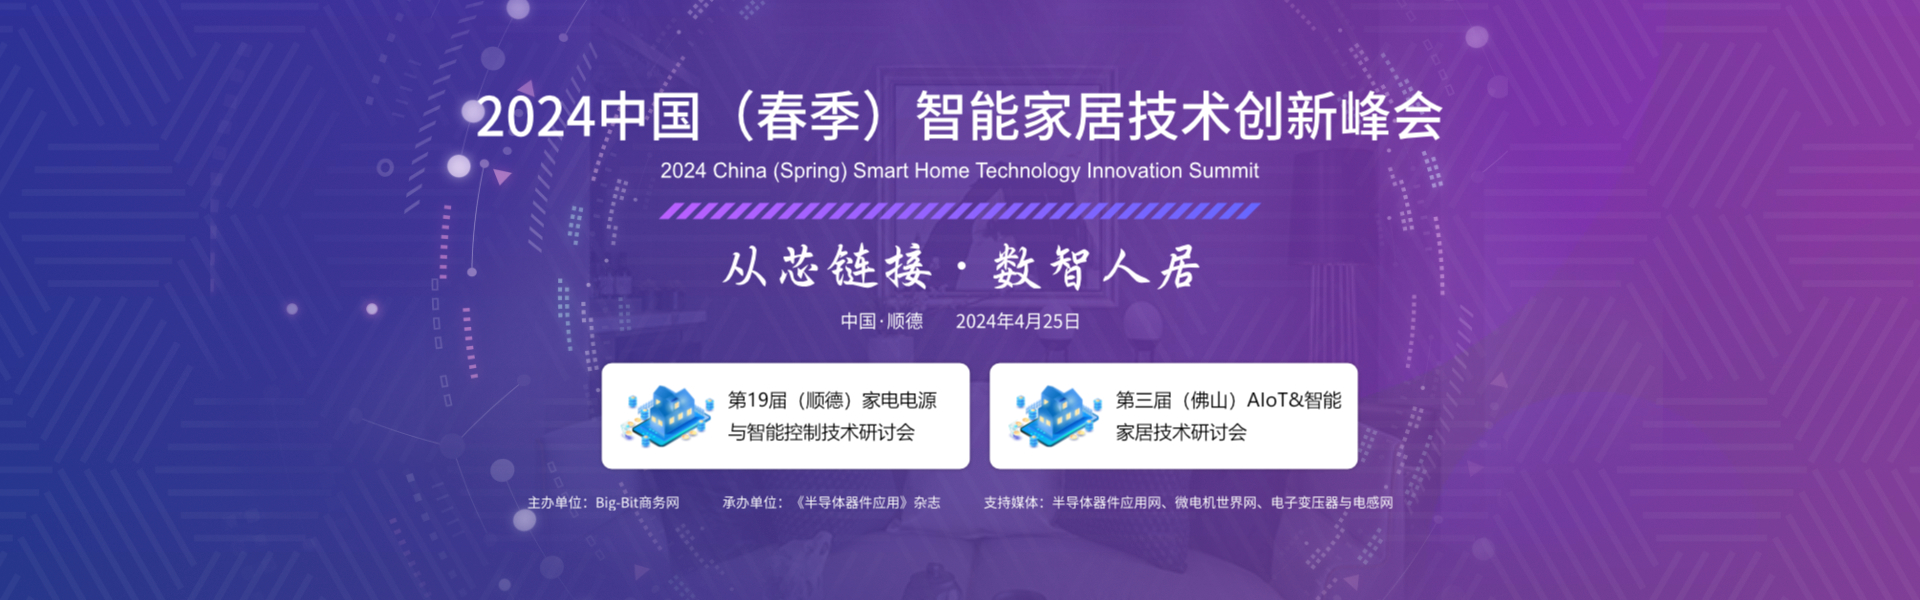 2024'中国（春季）智能家居技术创新峰会报名正式启动!